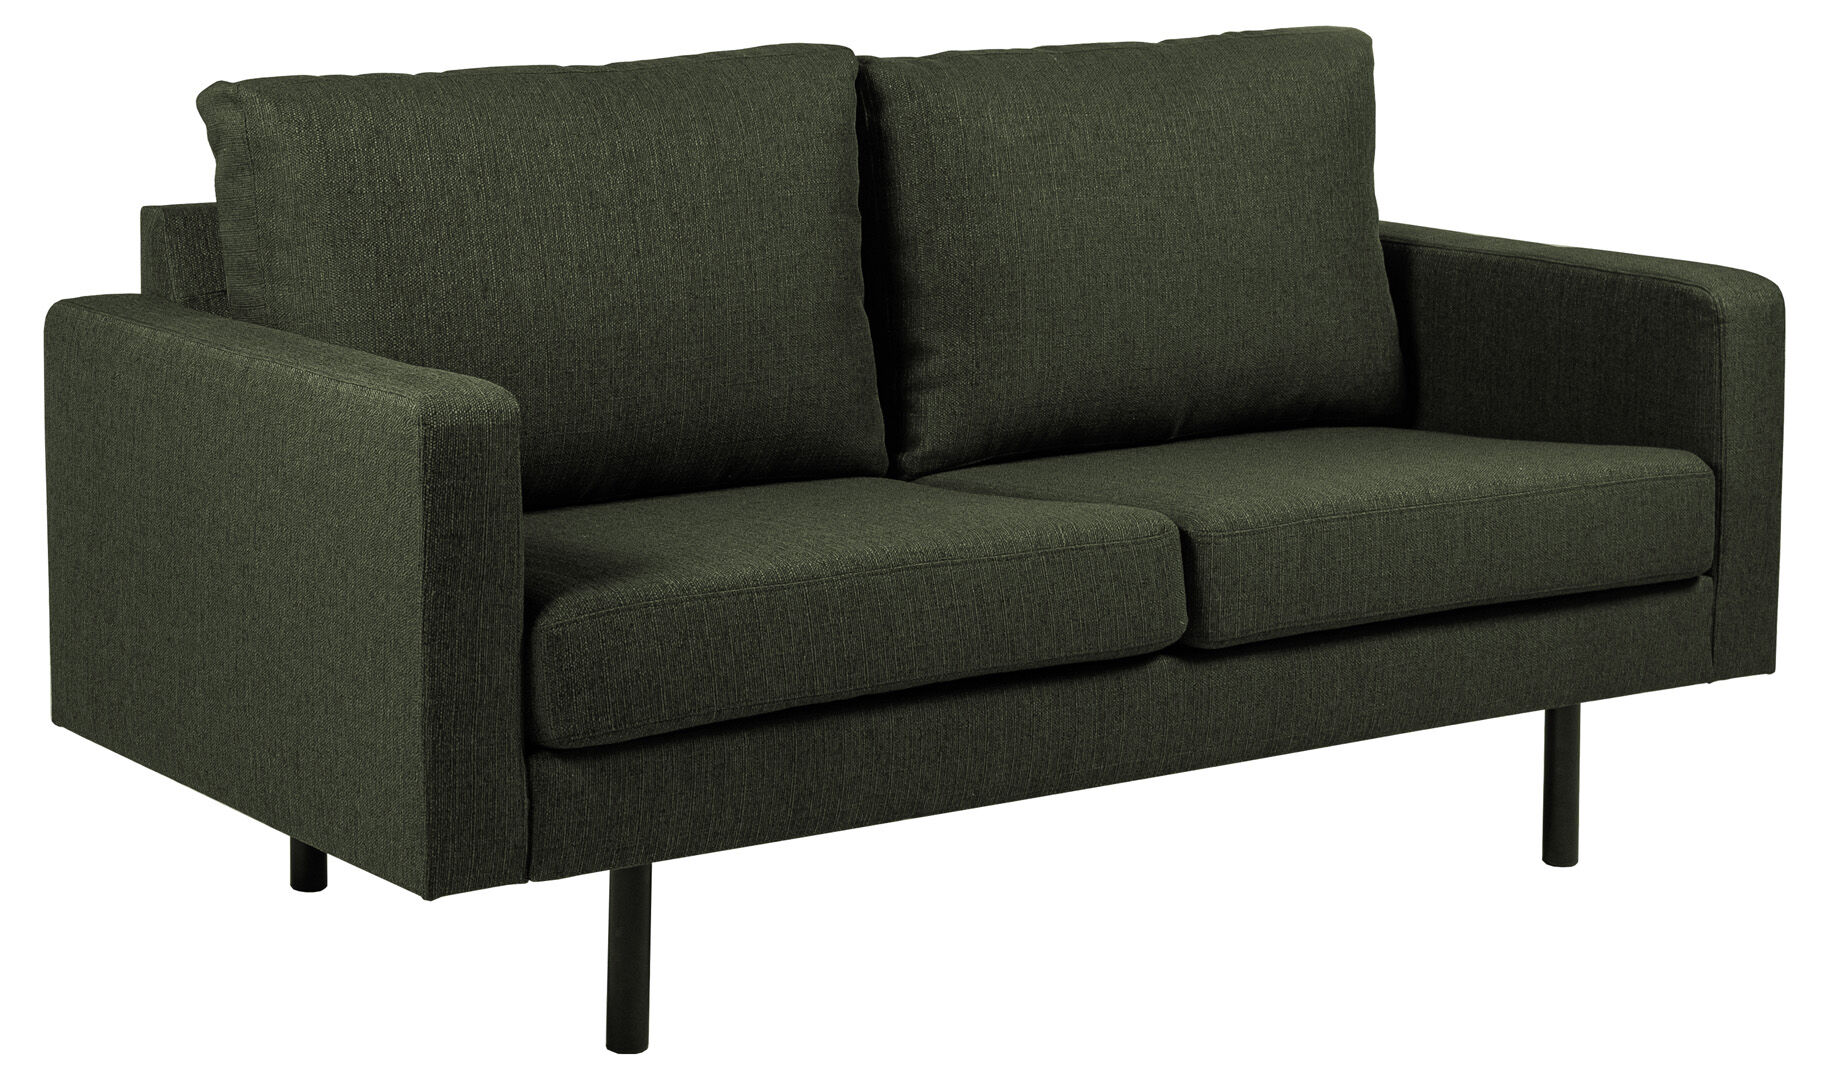 Chicago 2 -seters sofa med ben i svart metall. Grønnflaske